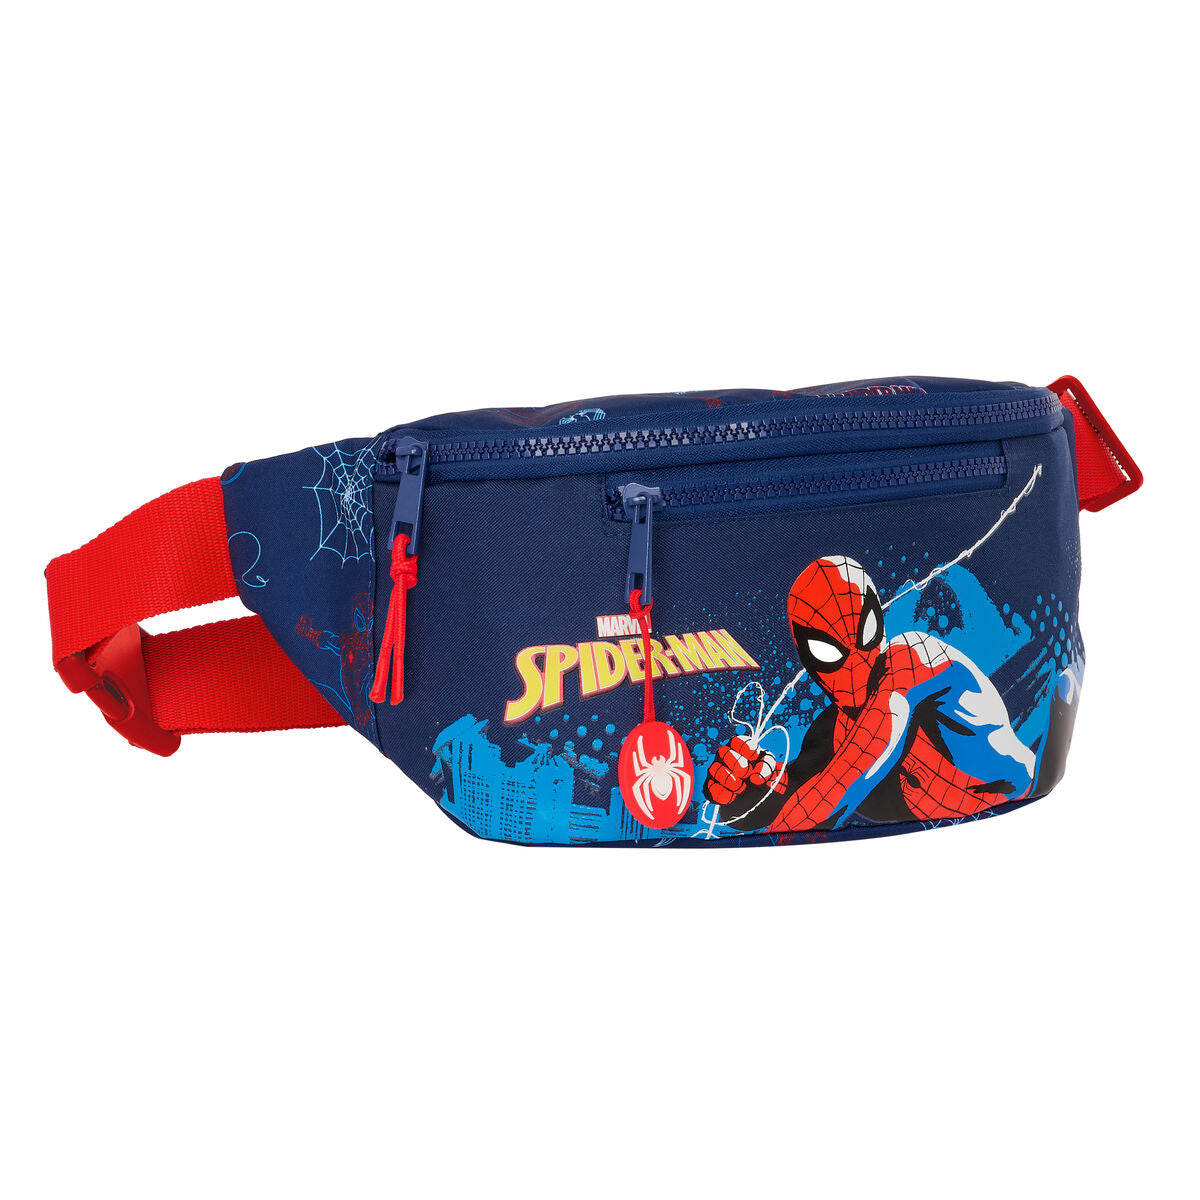 Belt Pouch Spider-Man Neon Navy Blue 23 x 12 x 9 cm